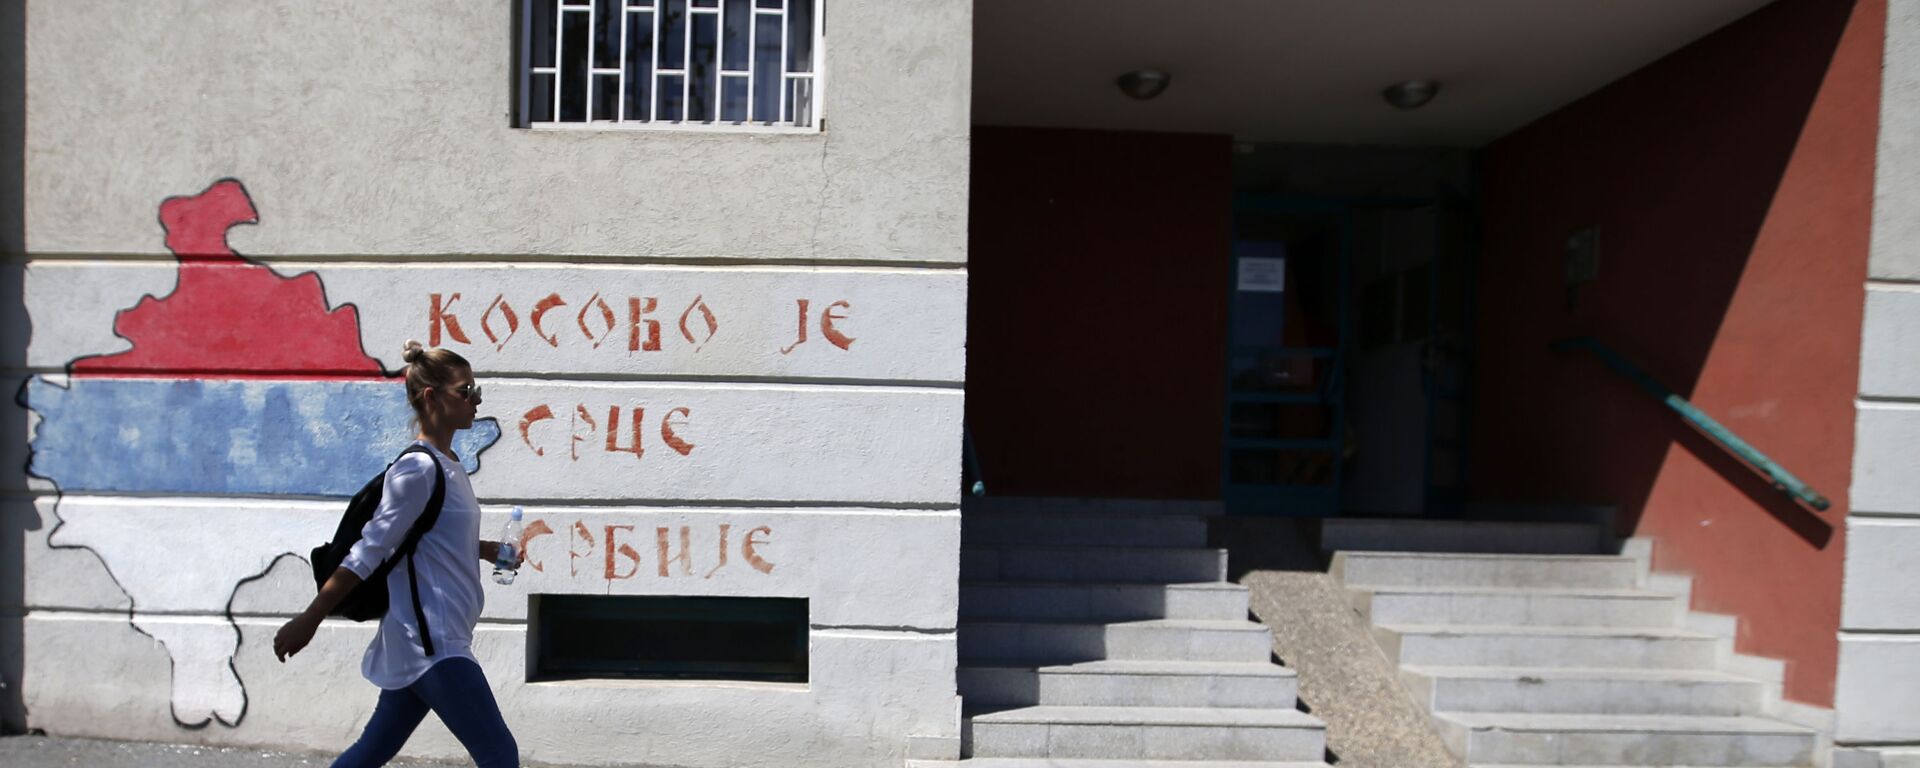 Графит у Београду – Косово је срце Србије - Sputnik Србија, 1920, 08.07.2021